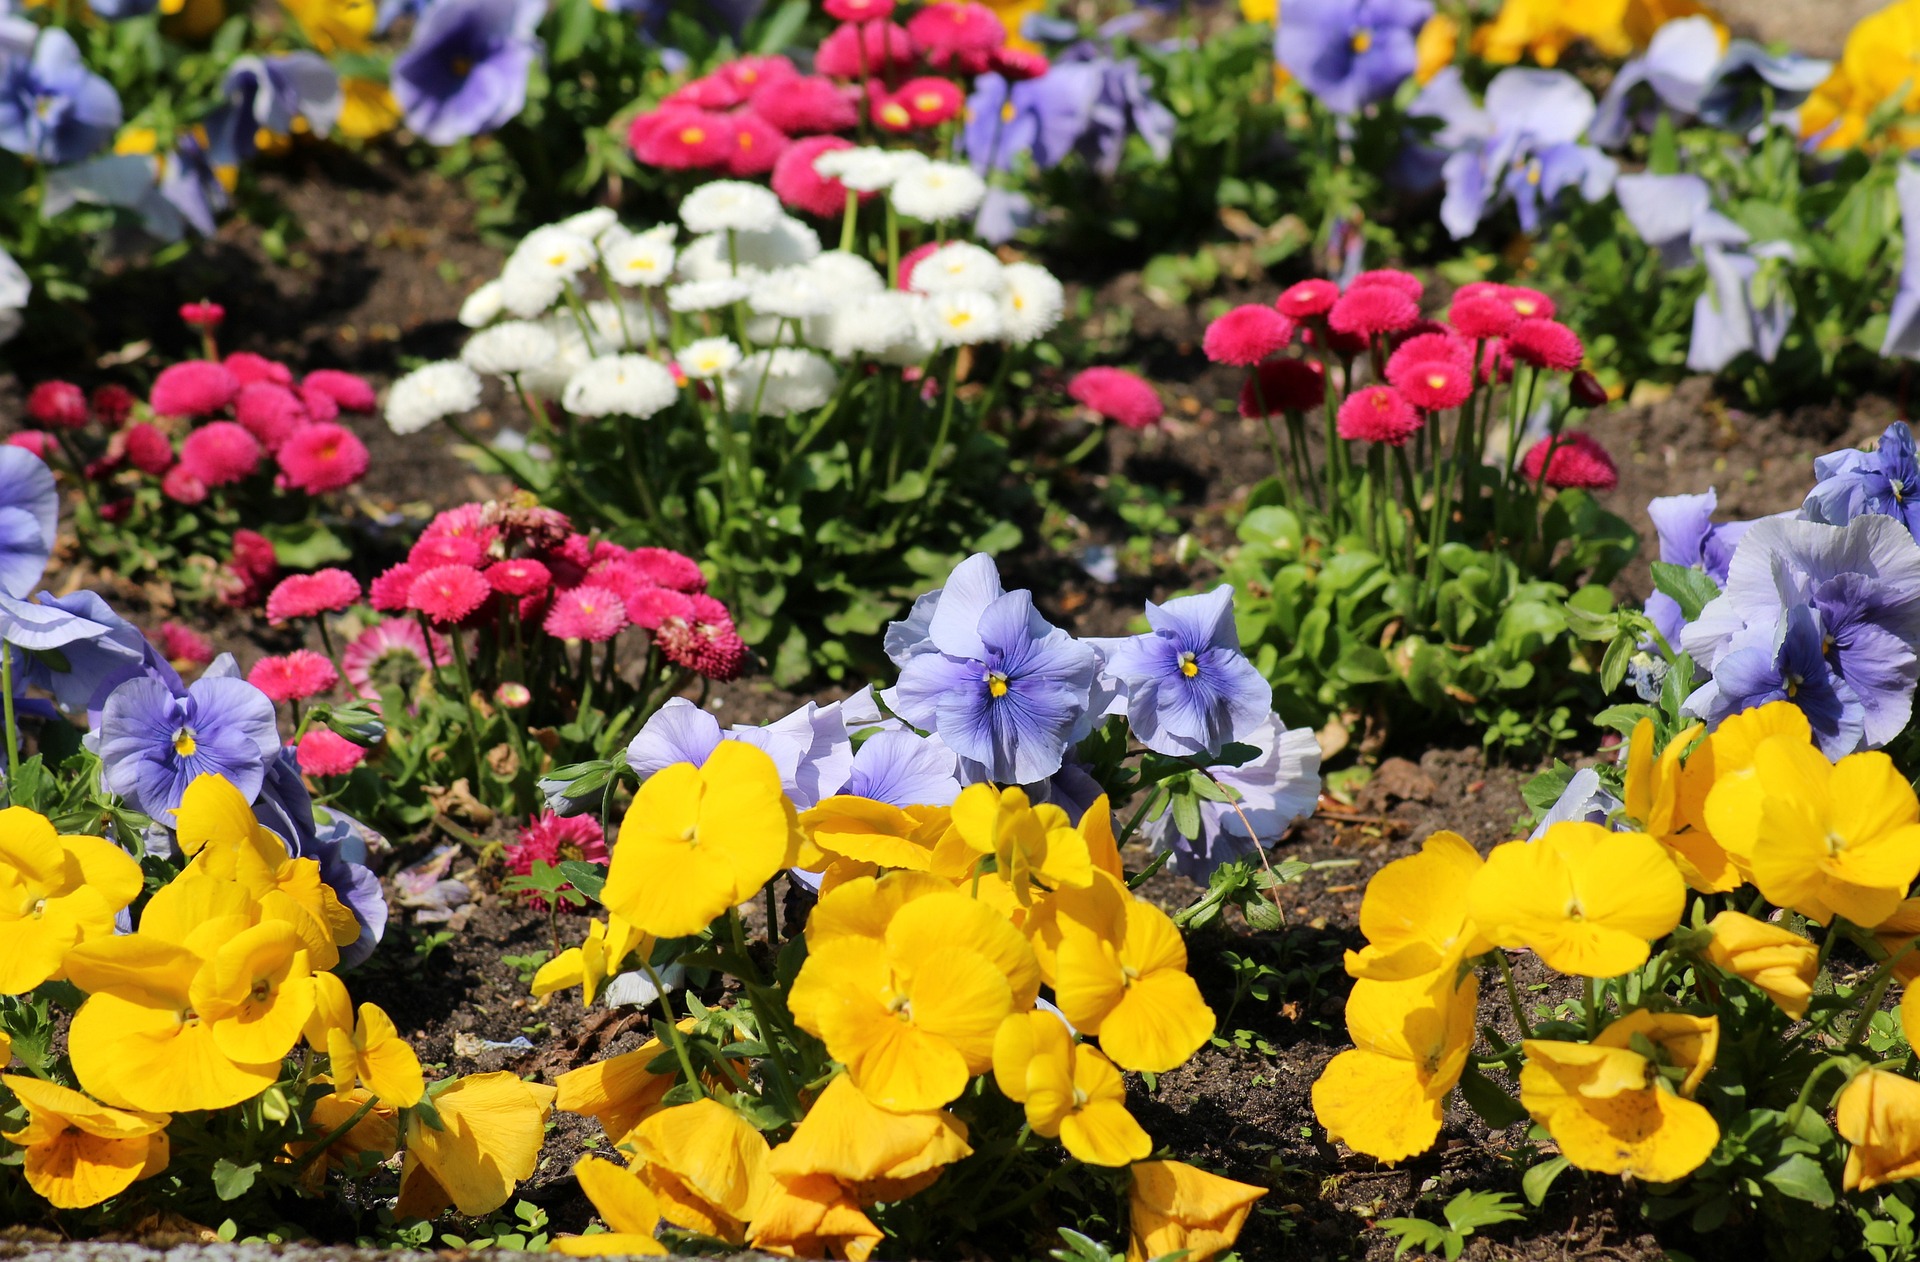 Na tym ujęciu widać przepiękną rabatę, która zachwyca intensywnością kolorów i różnorodnością kwiatów. Wśród nich można dostrzec delikatne tulipany, urocze bratki, piękne róże oraz wiele innych kolorowych kwiatów, które wspólnie tworzą niepowtarzalny i zjawiskowy krajobraz. Ta urocza rabata z pewnością przyciąga uwagę i dostarcza wiele radości dla miłośników ogrodów i kwiatów